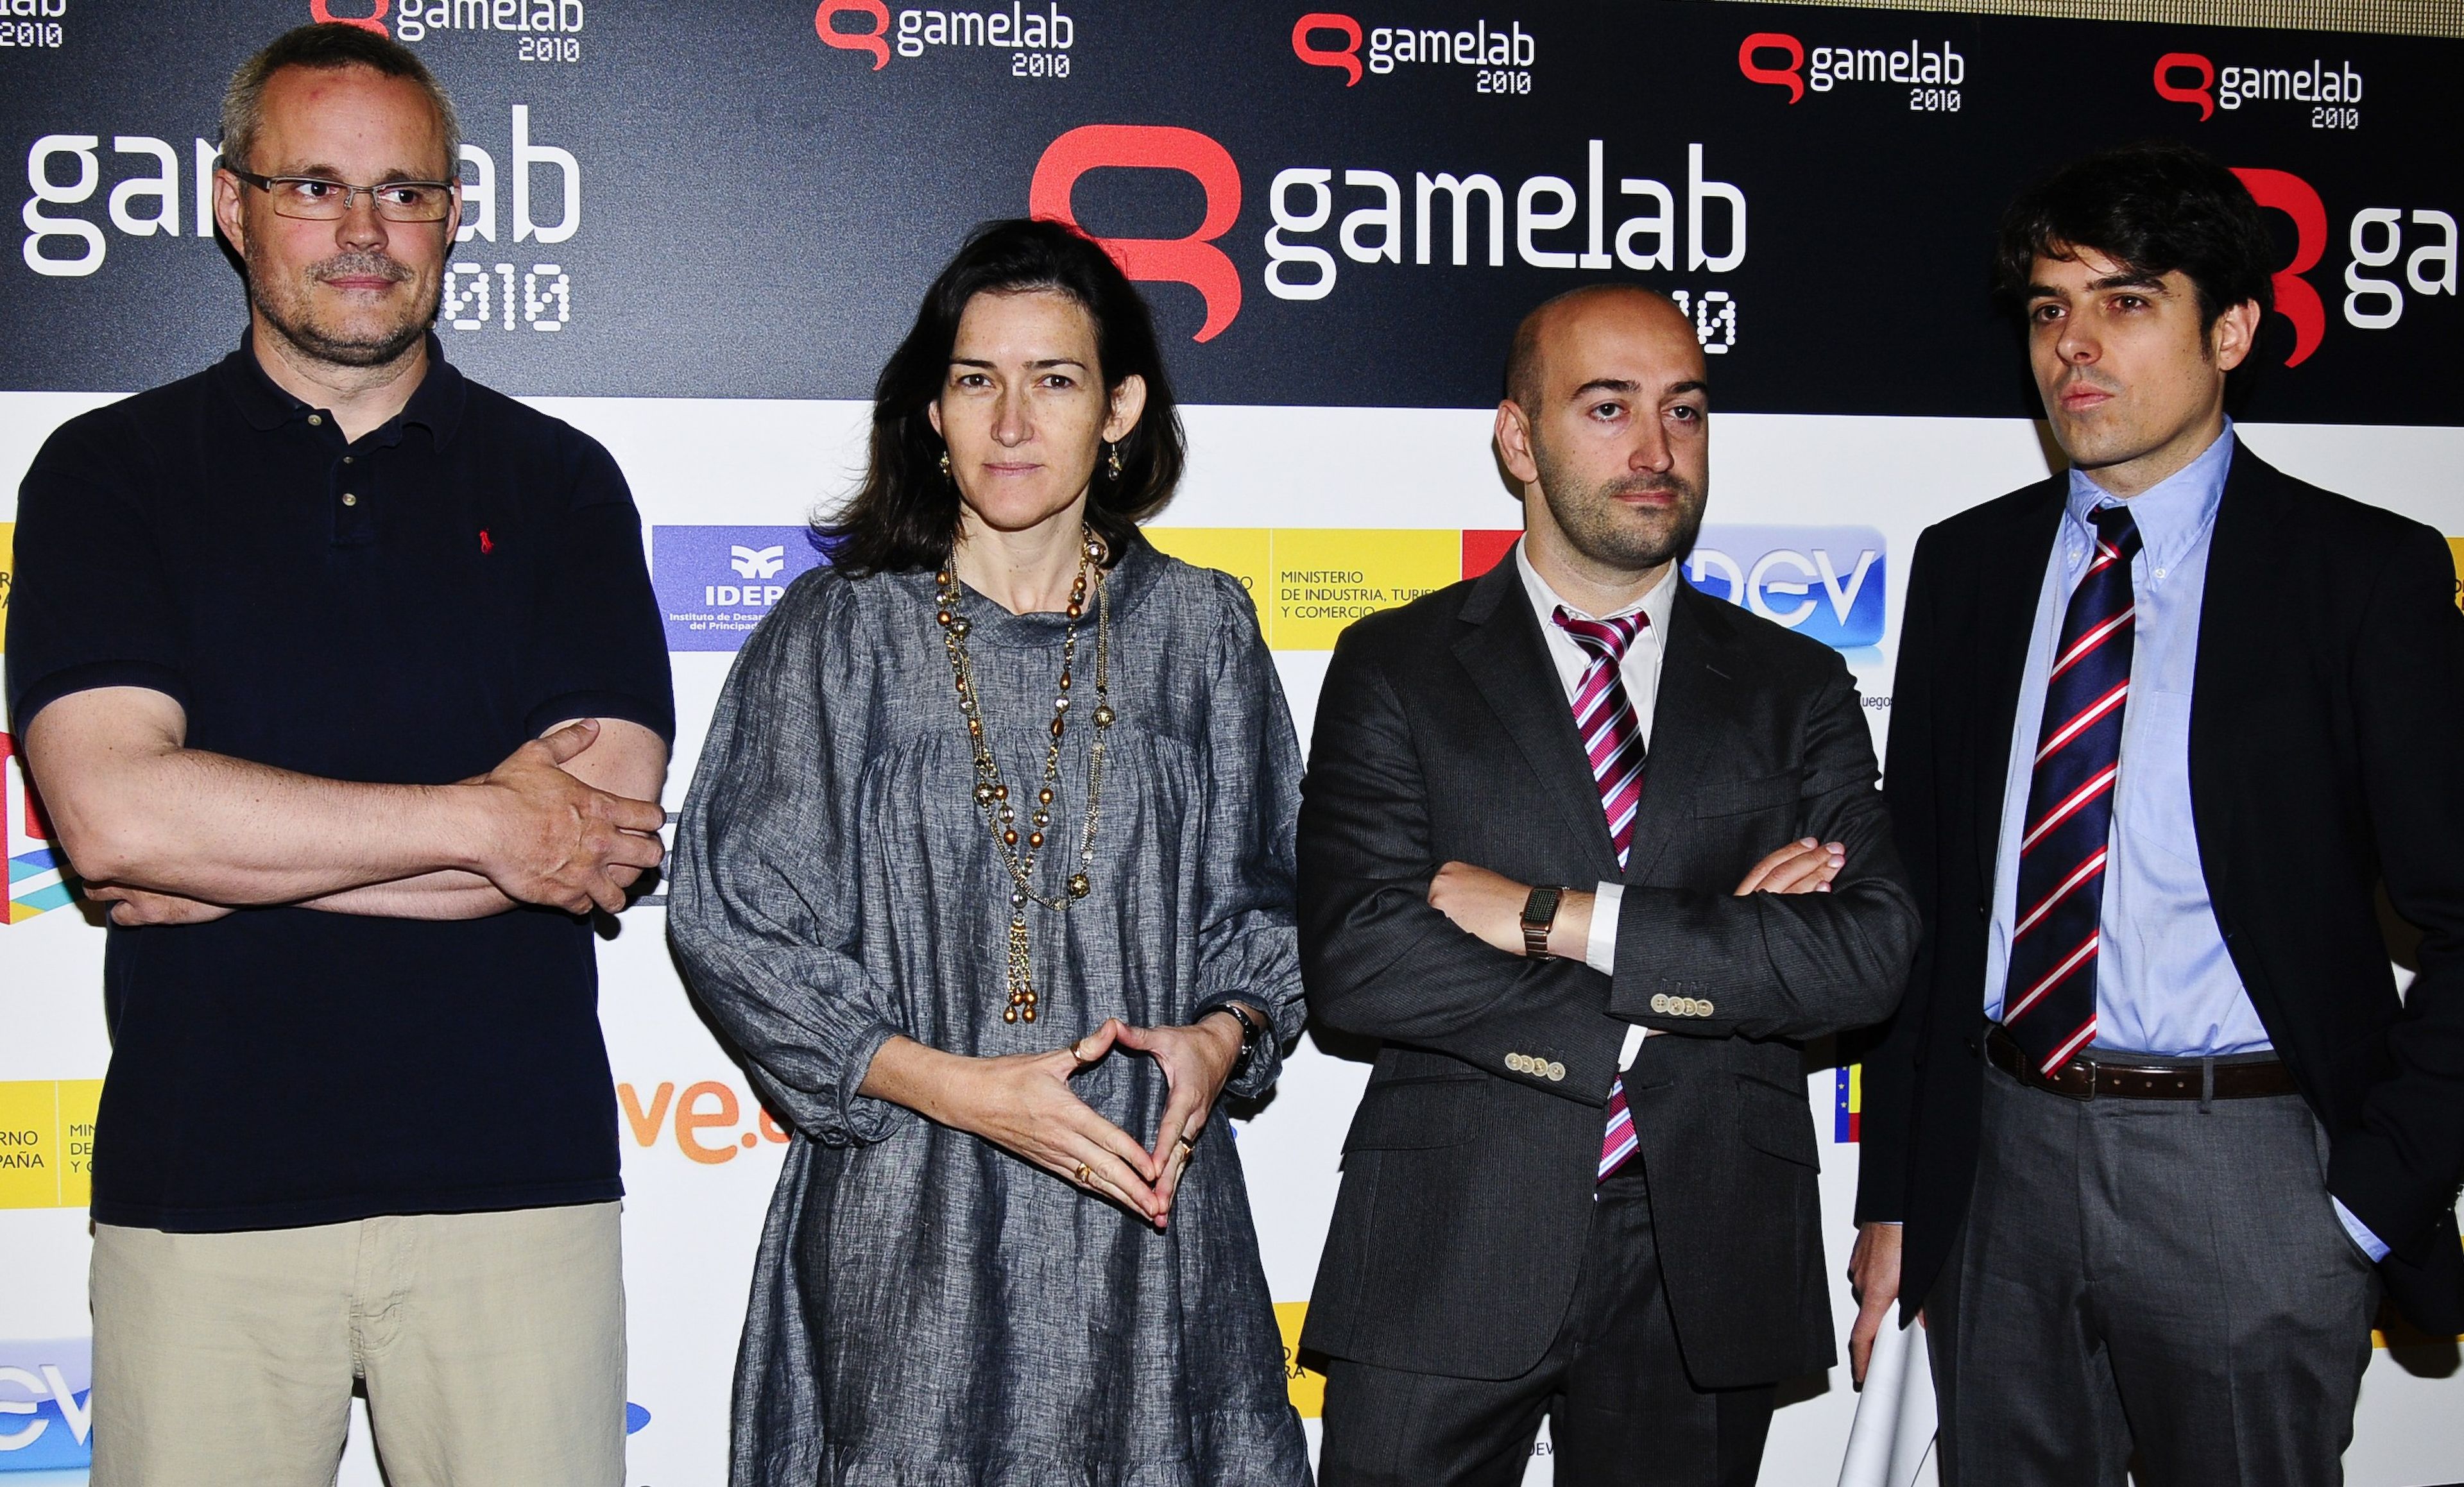 El 'E3 español' se llama Gamelab 2010